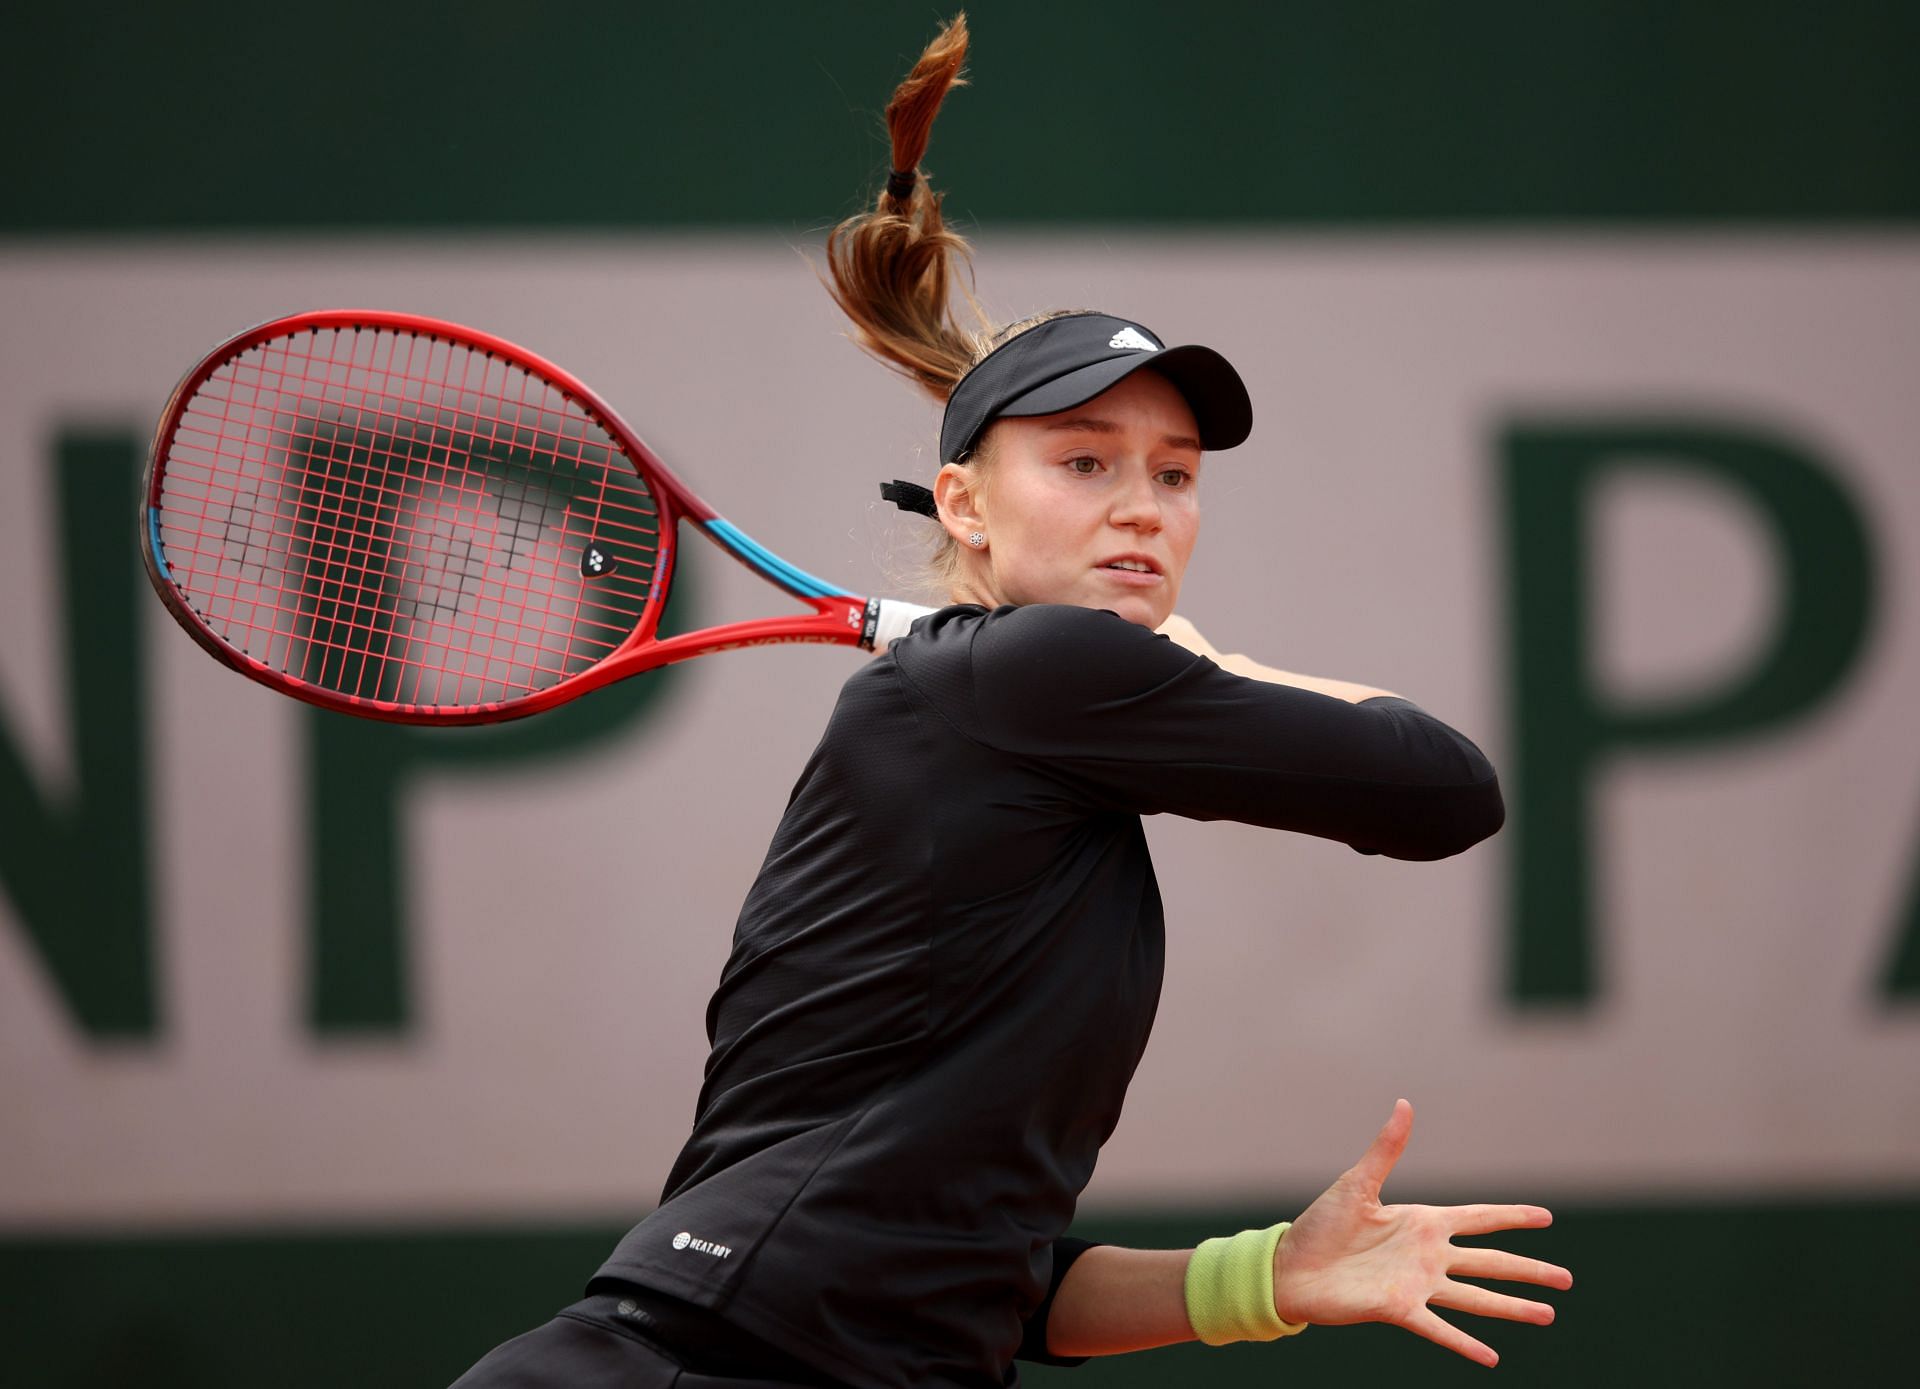 Elena Rybakina at the 2022 French Open.